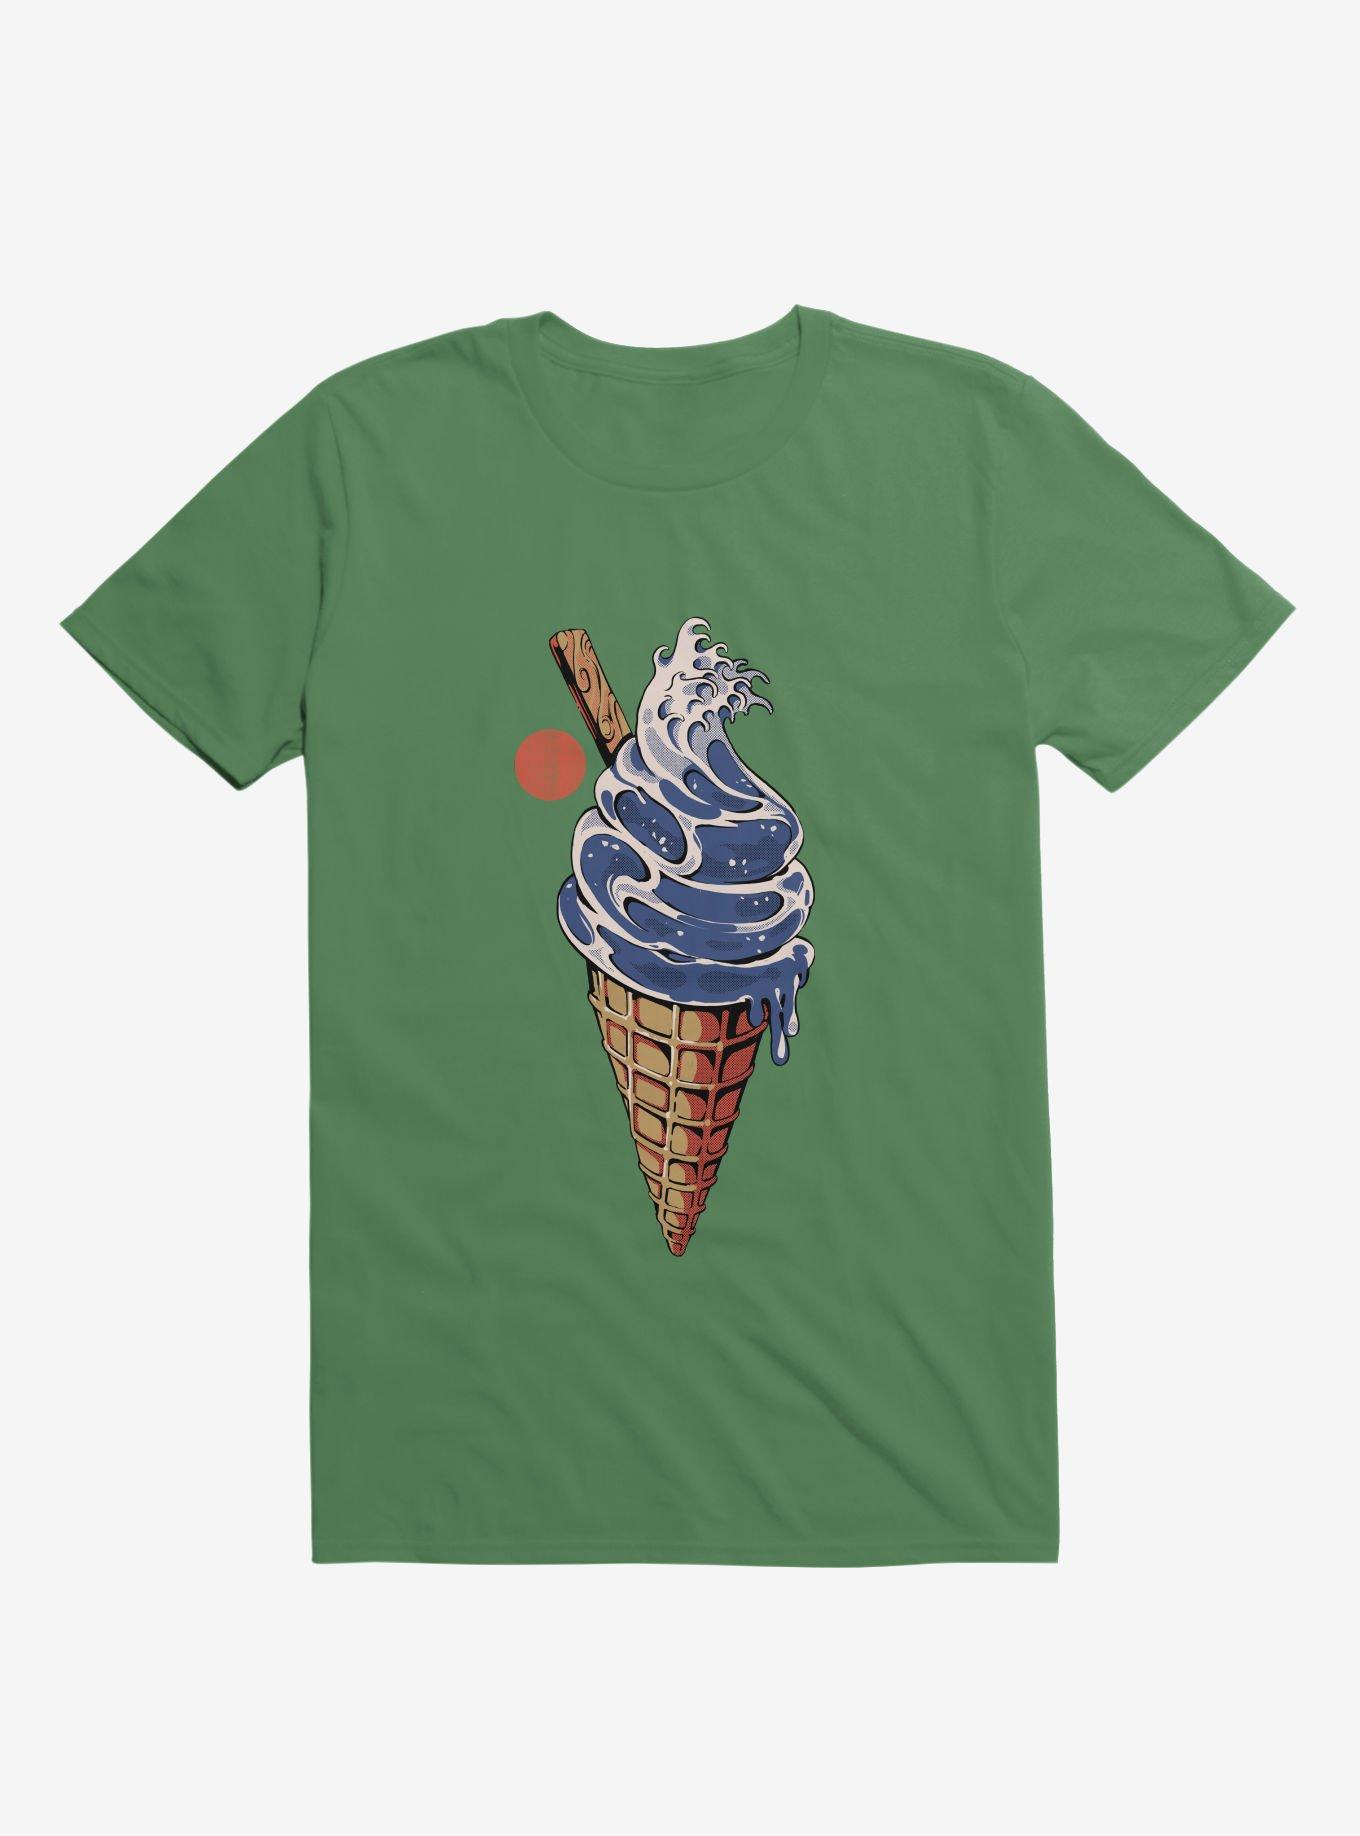 Japanese Great Ice Cream Irish Green T-Shirt